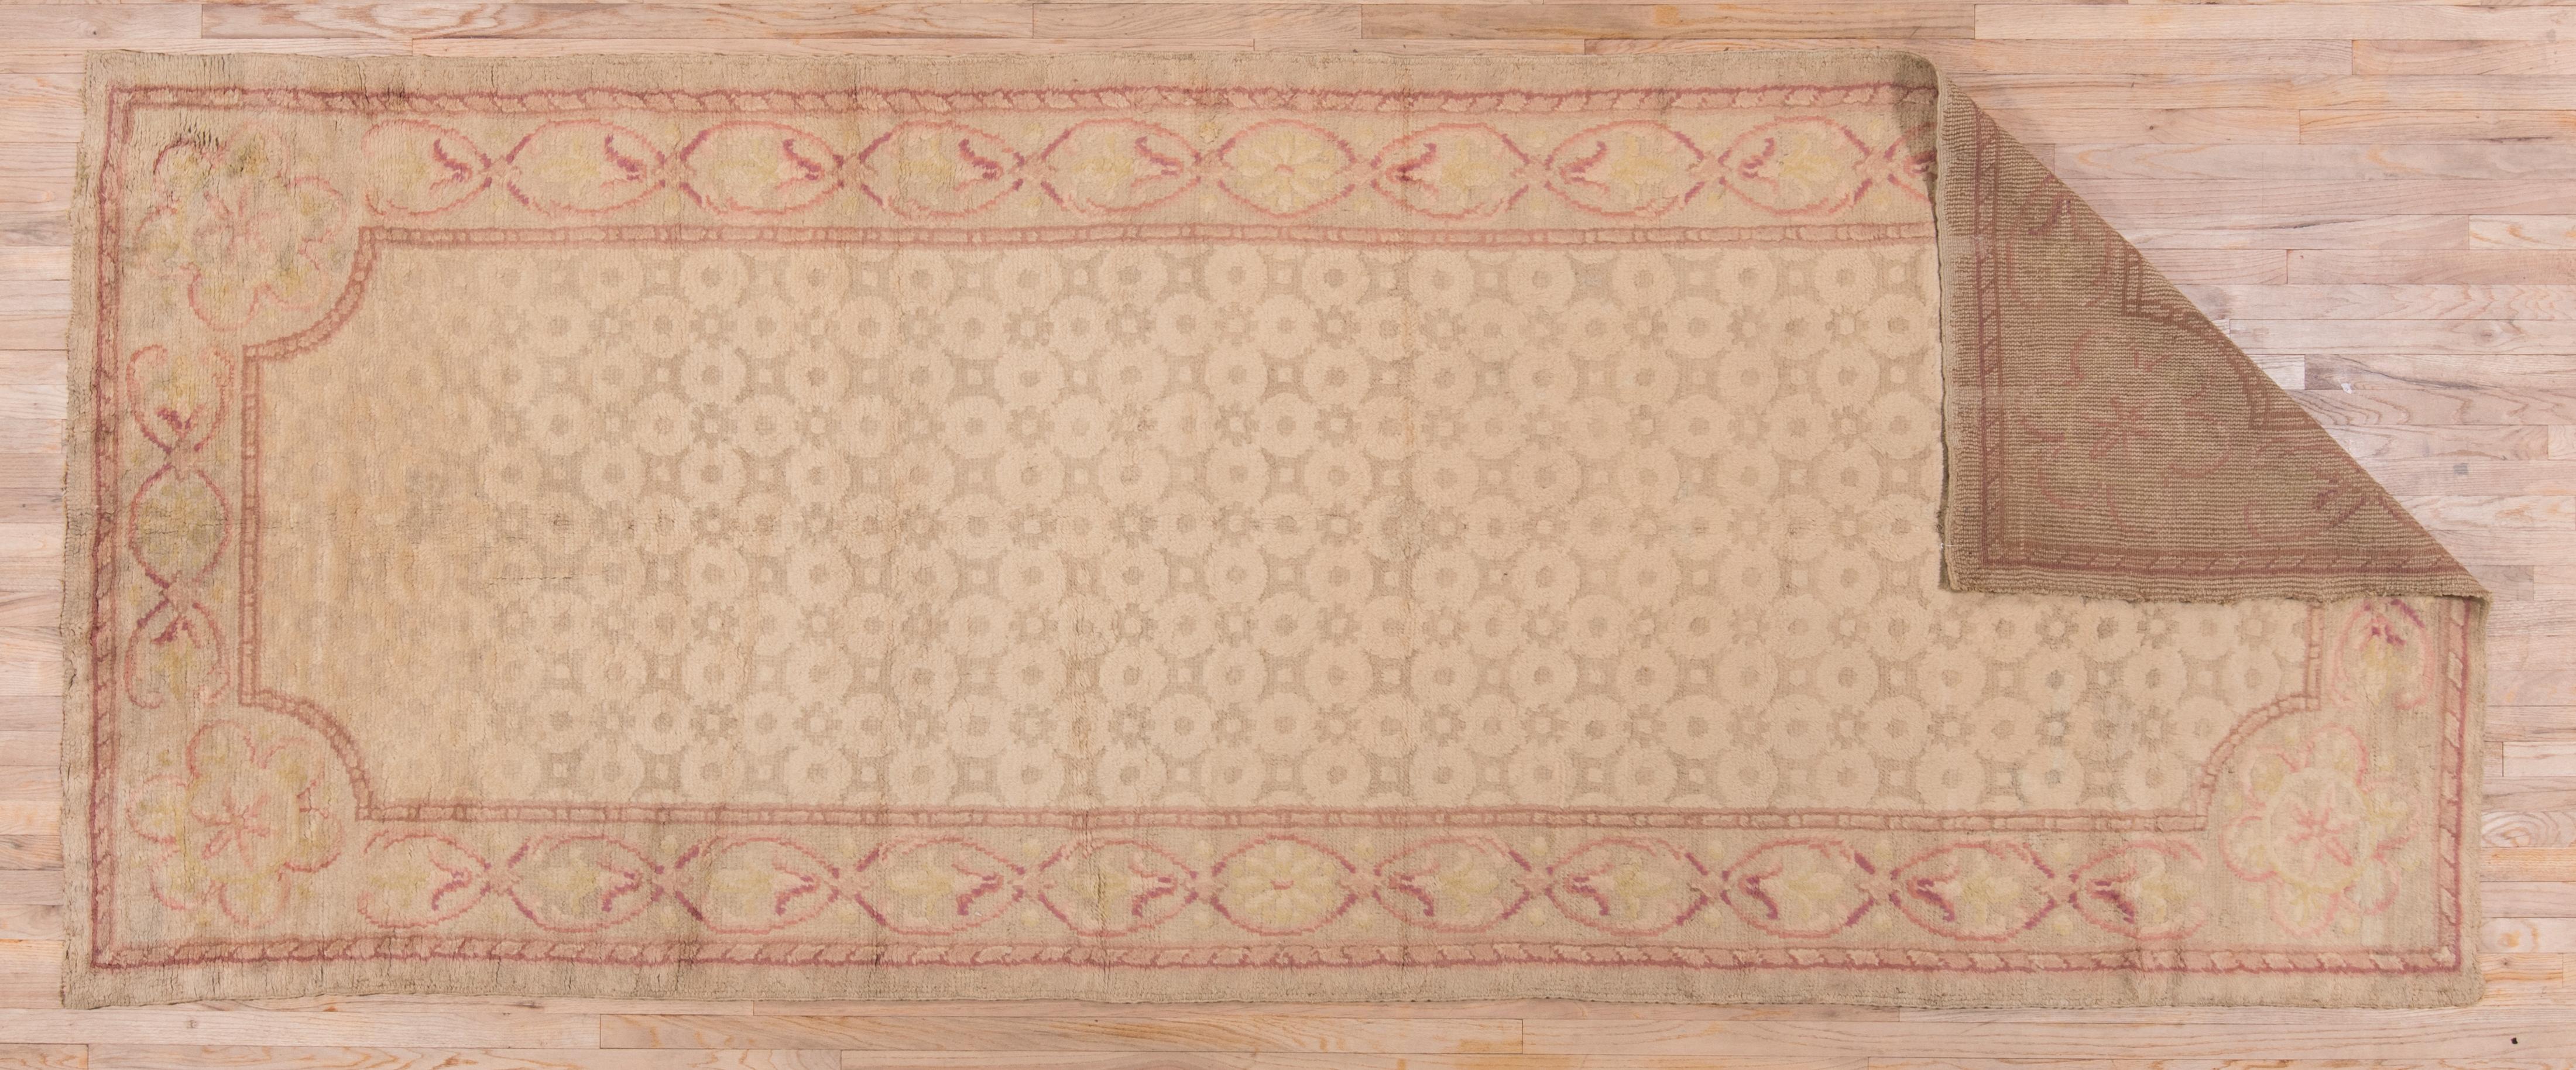 Dieser dicke, schwere europäische Teppich im Art-Déco-Stil hat ein sandbeiges Feld mit einem kleinen achteckigen und quadratischen Rapportmuster und rund abgeschrägten Ecken. Die tonale Abschlussbordüre zeigt Ellipsen mit Blumen oder Sternen. Helle